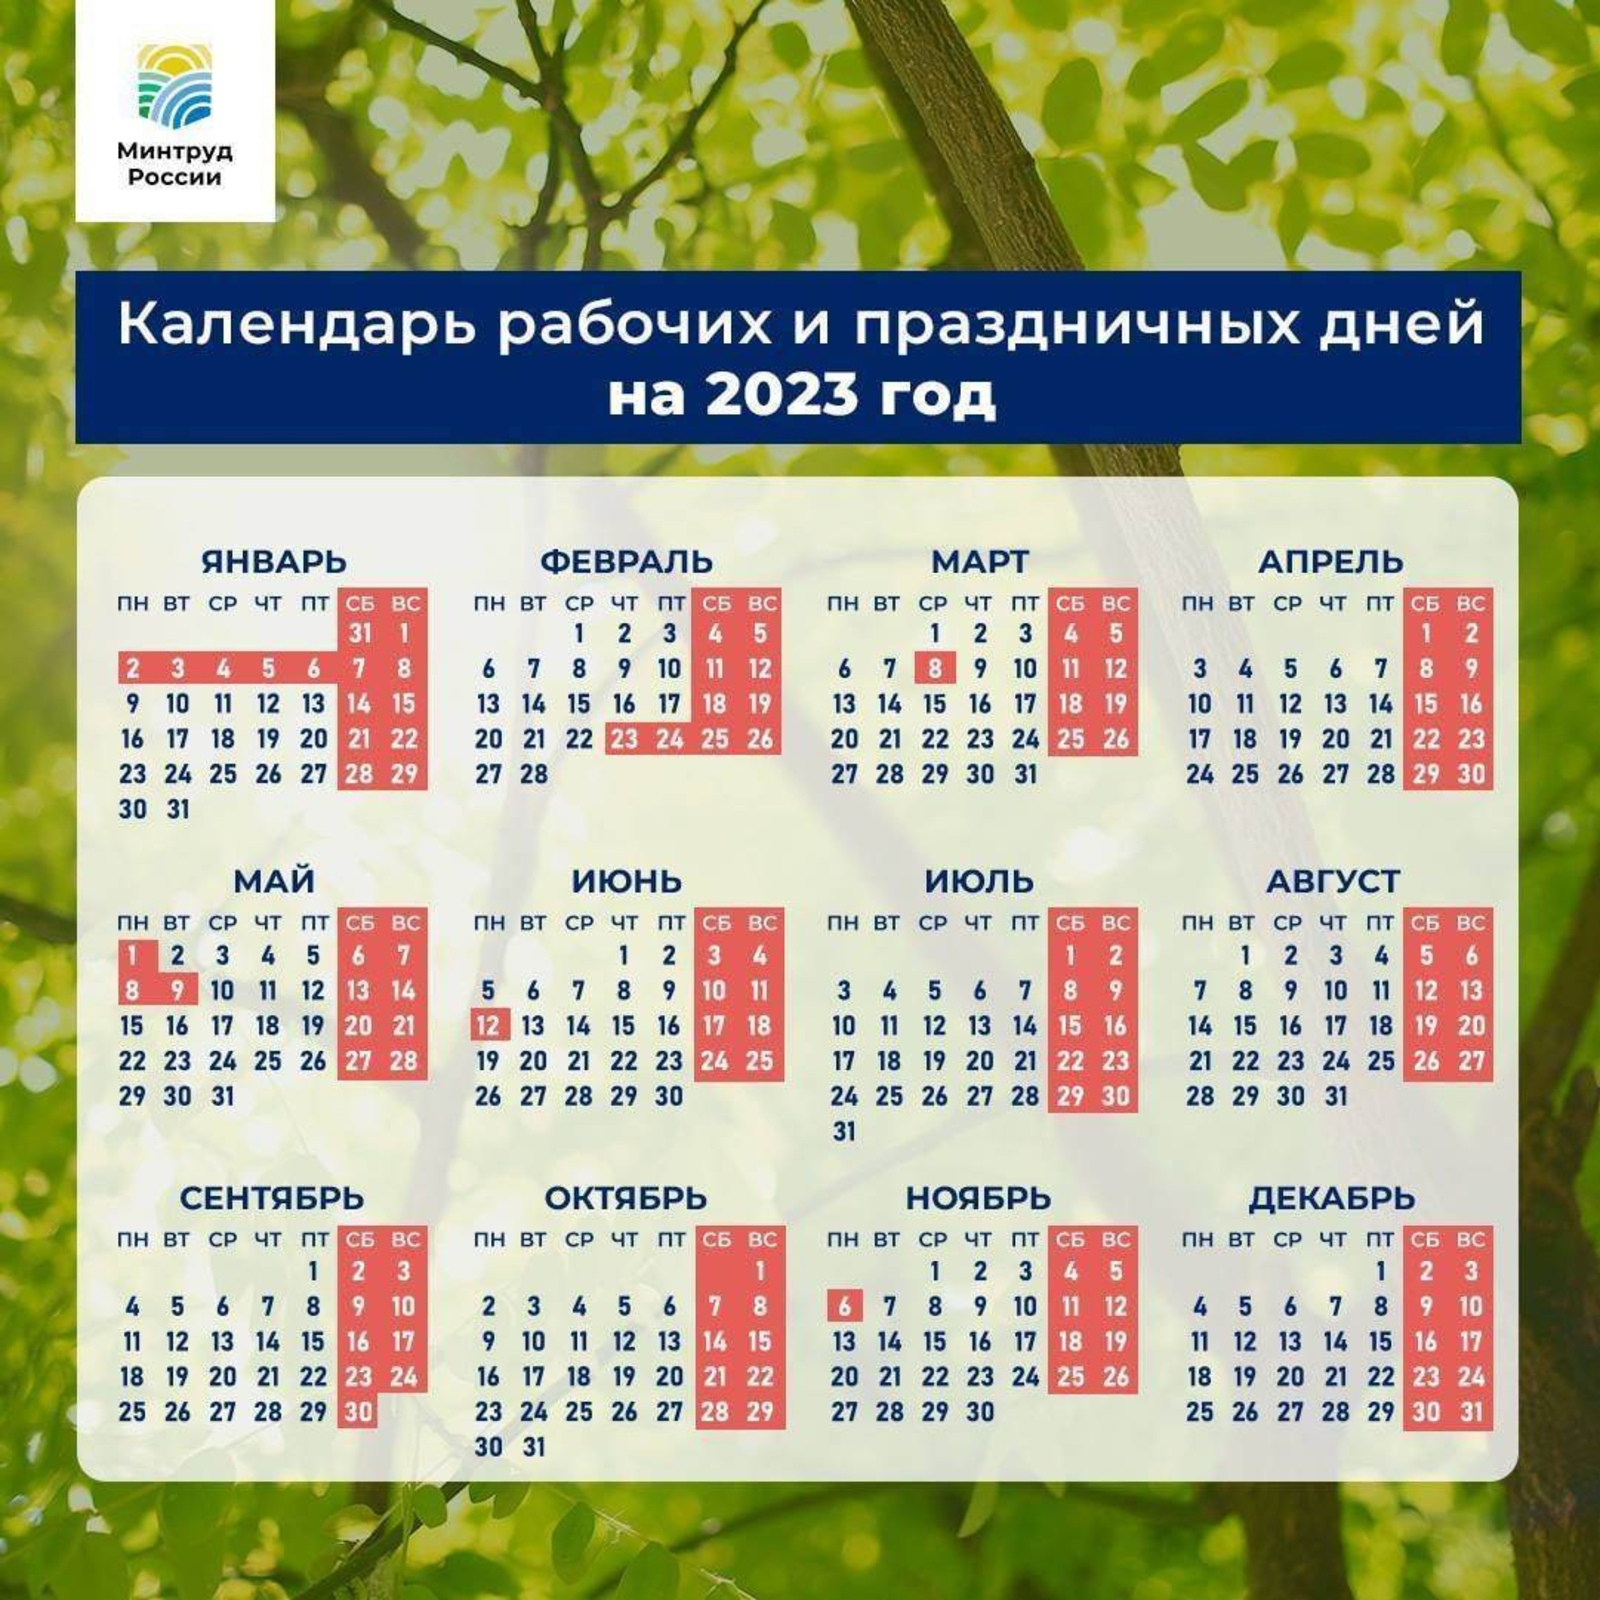 Министерство труда России сообщило, как россияне будут отдыхать в 2023 году